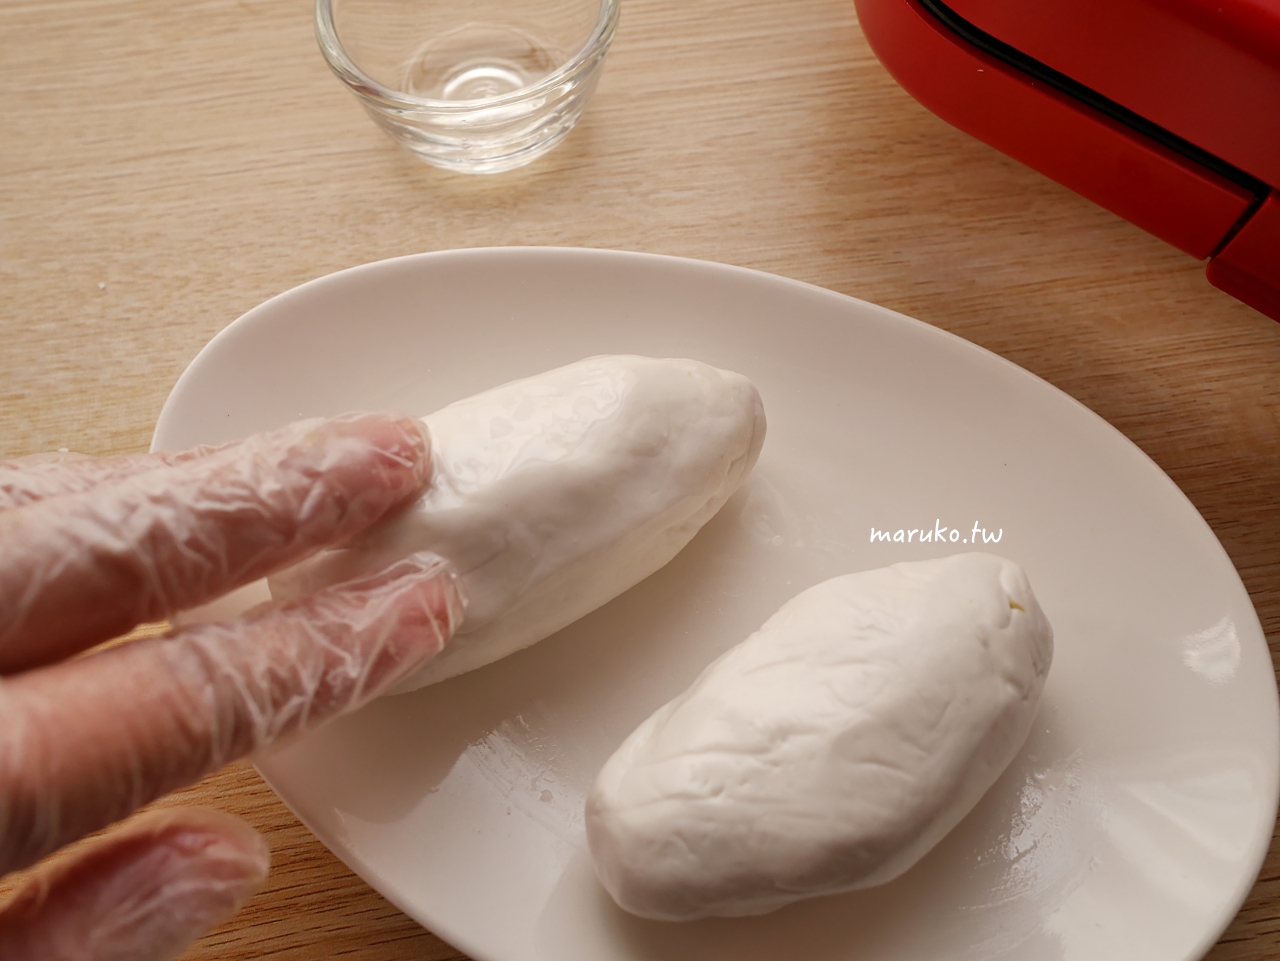 【食譜】白皮鯛魚燒 麻糬感鯛魚燒 冰心地瓜運用做法 @Maruko與美食有個約會